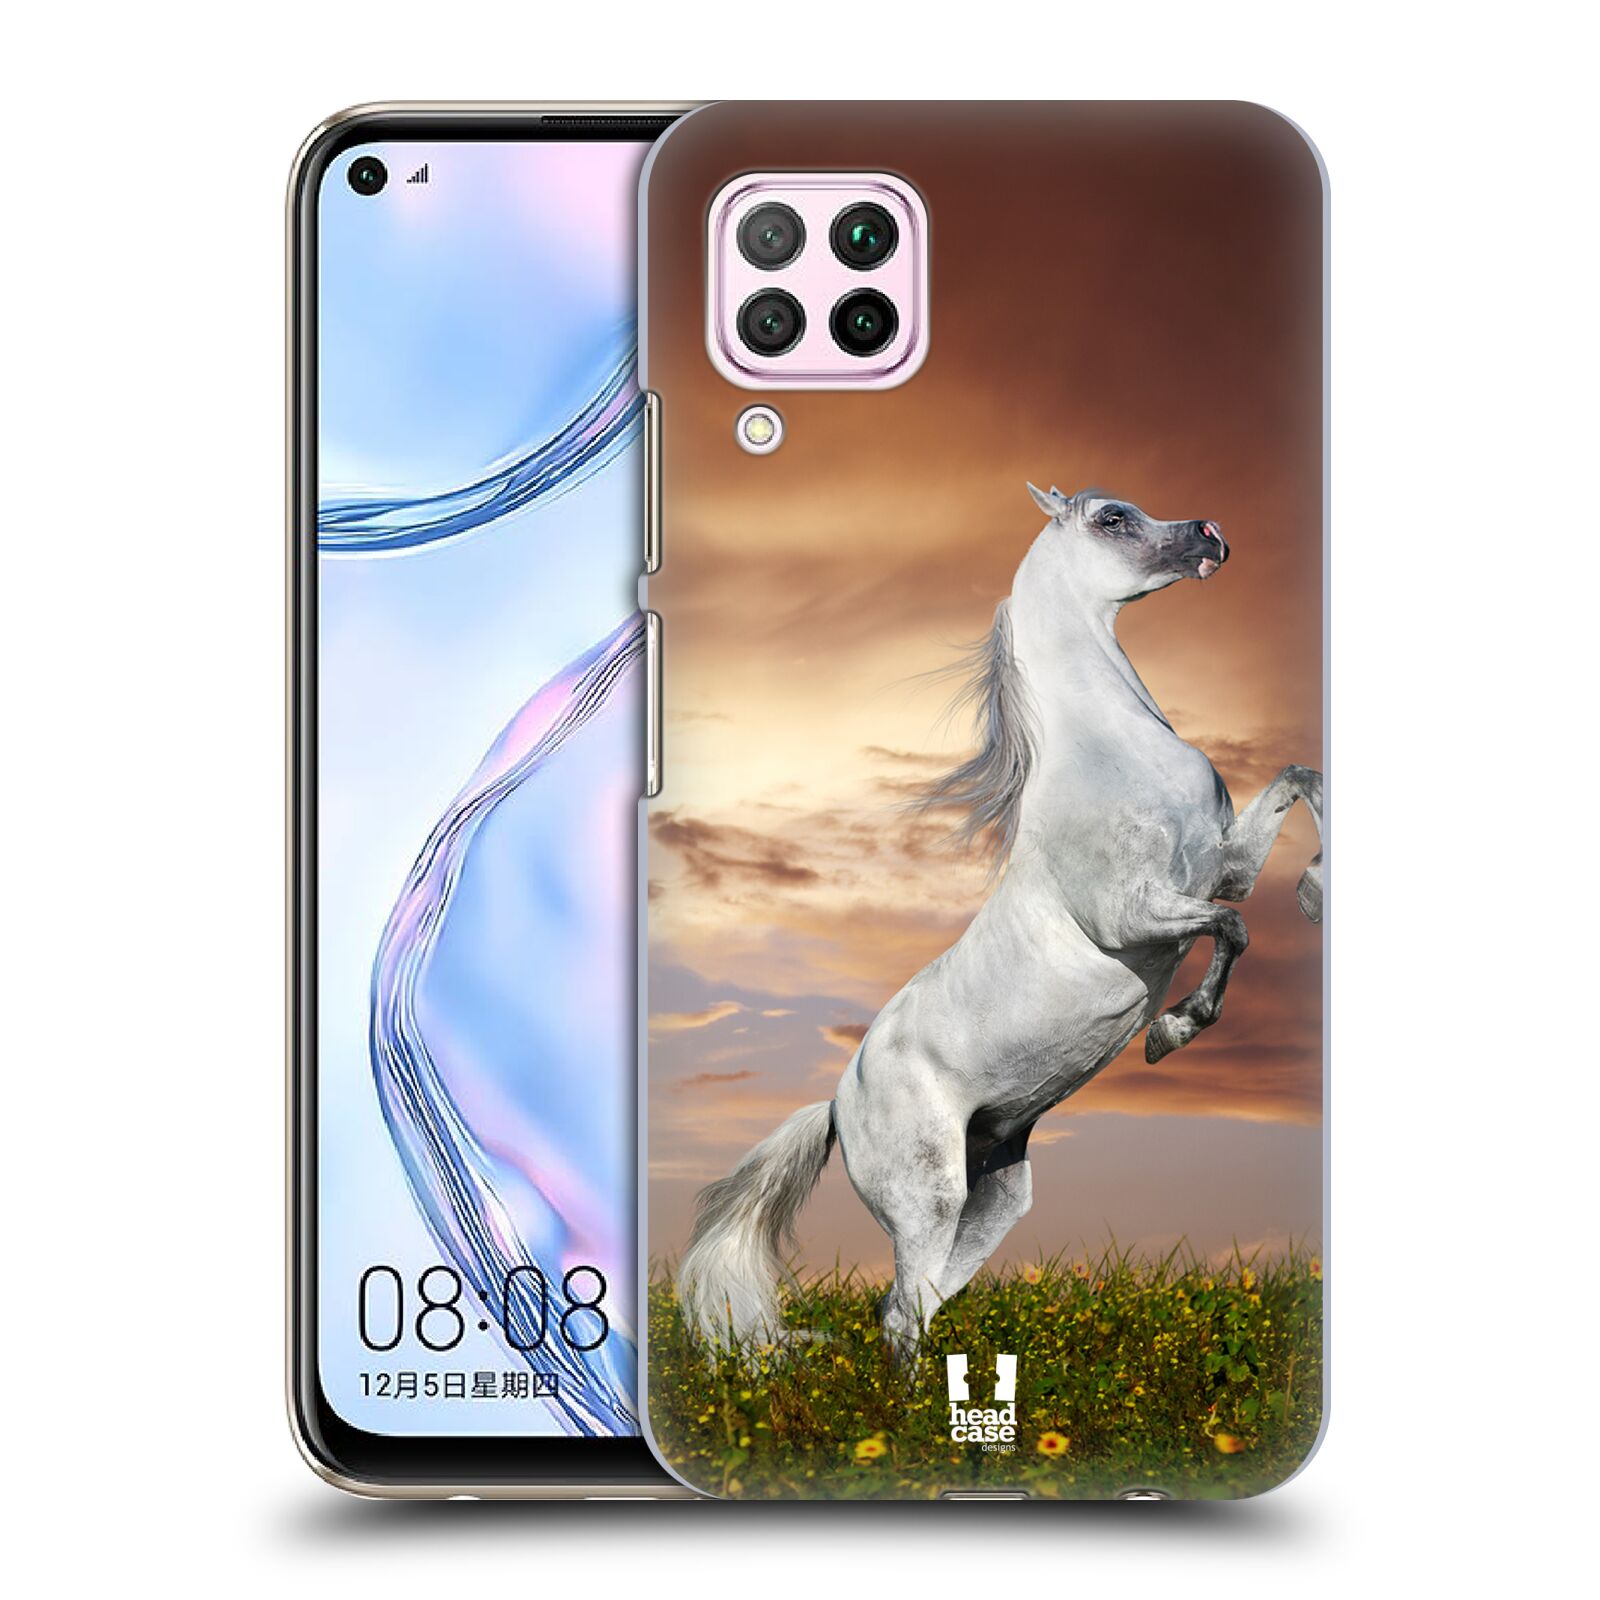 Zadní obal pro mobil Huawei P40 LITE - HEAD CASE - Svět zvířat divoký kůň